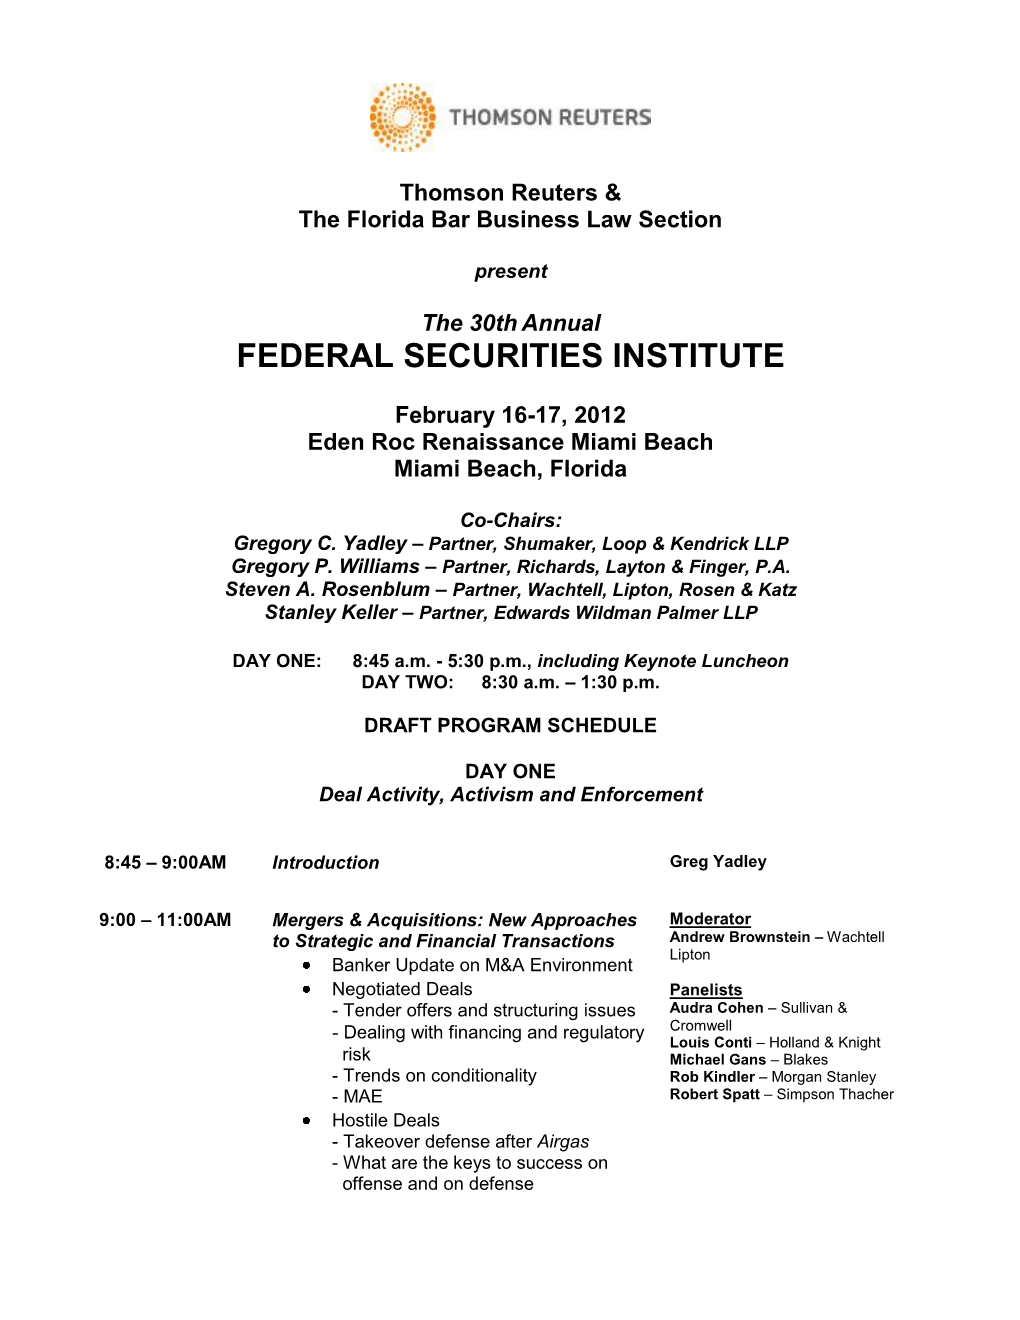 Federal Securities Institute